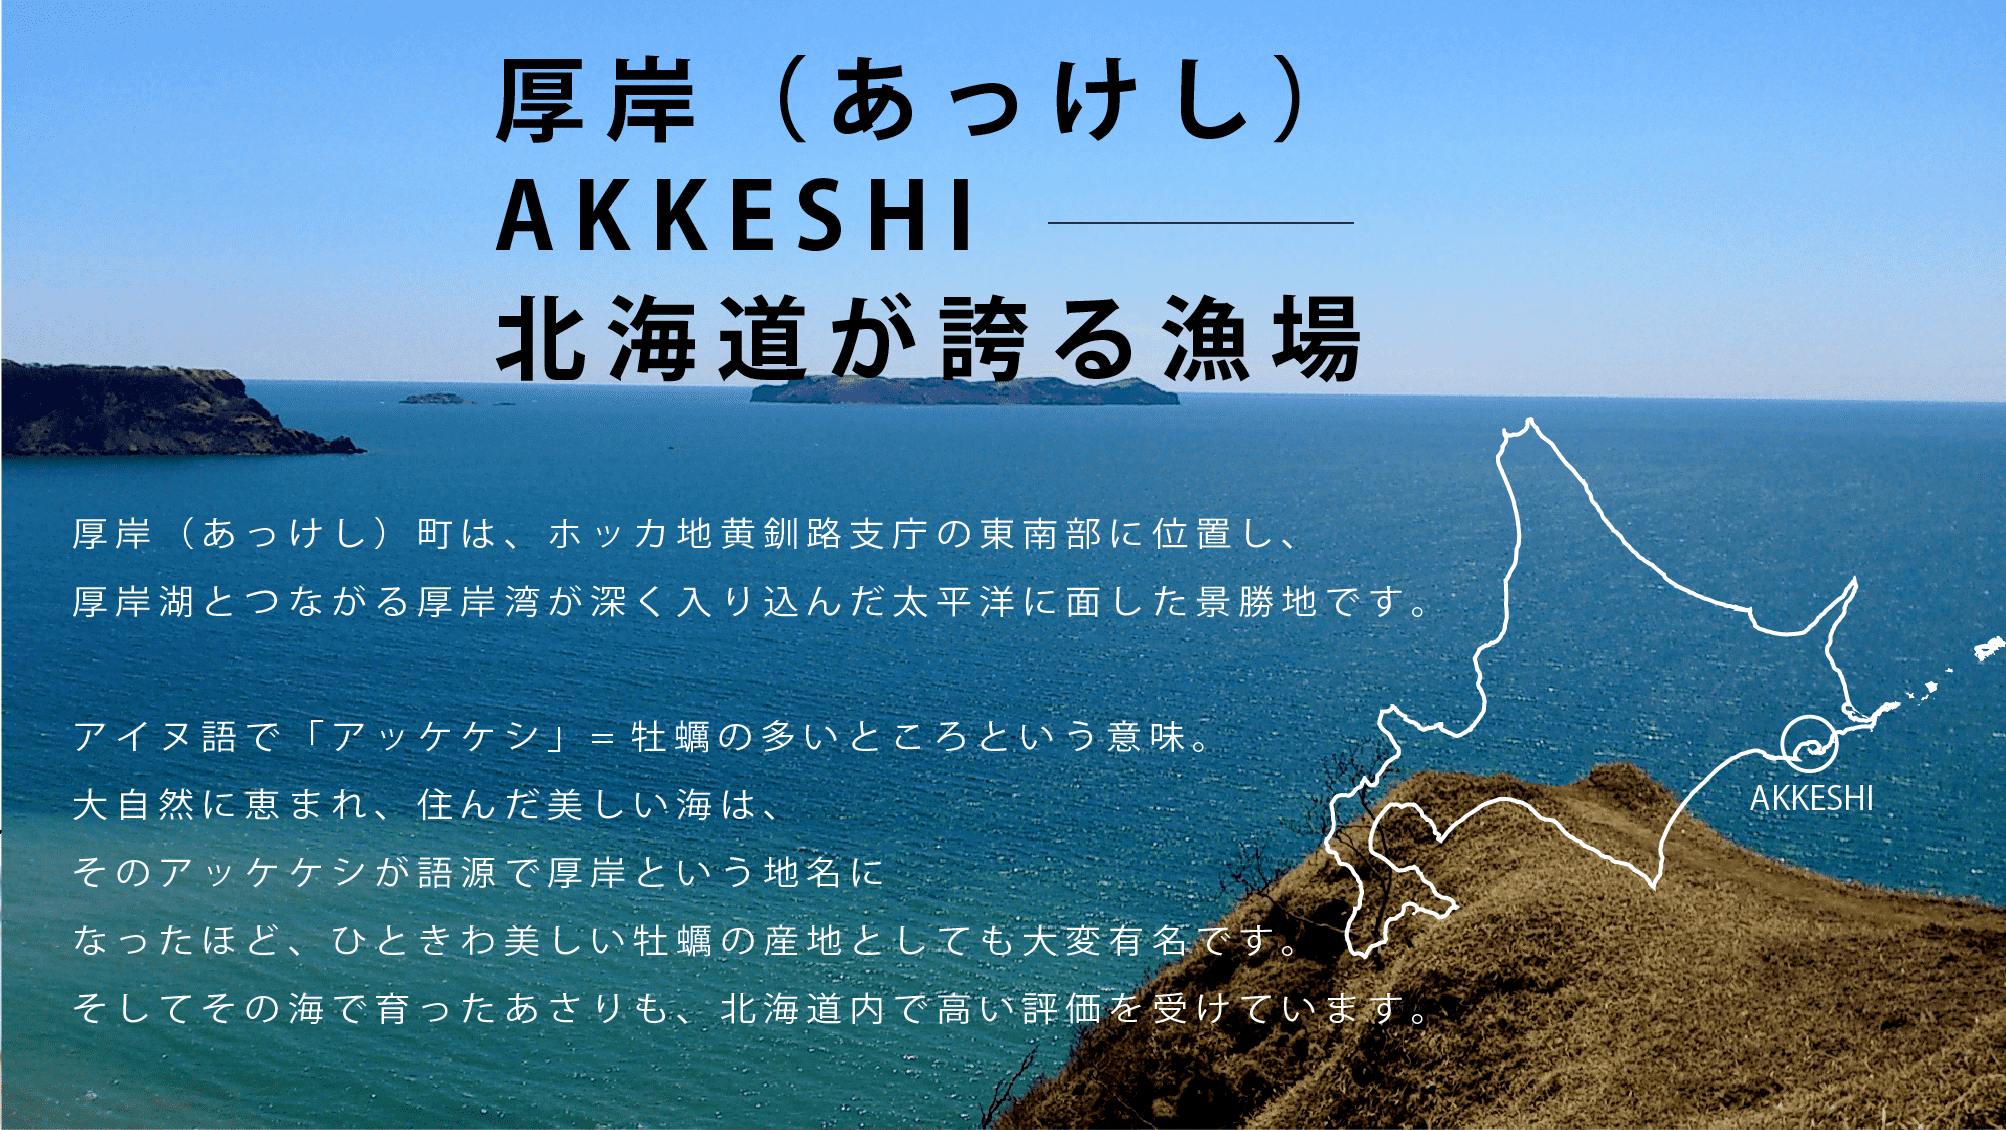 厚岸（あっけし）AKKESHI北海道が誇る漁場